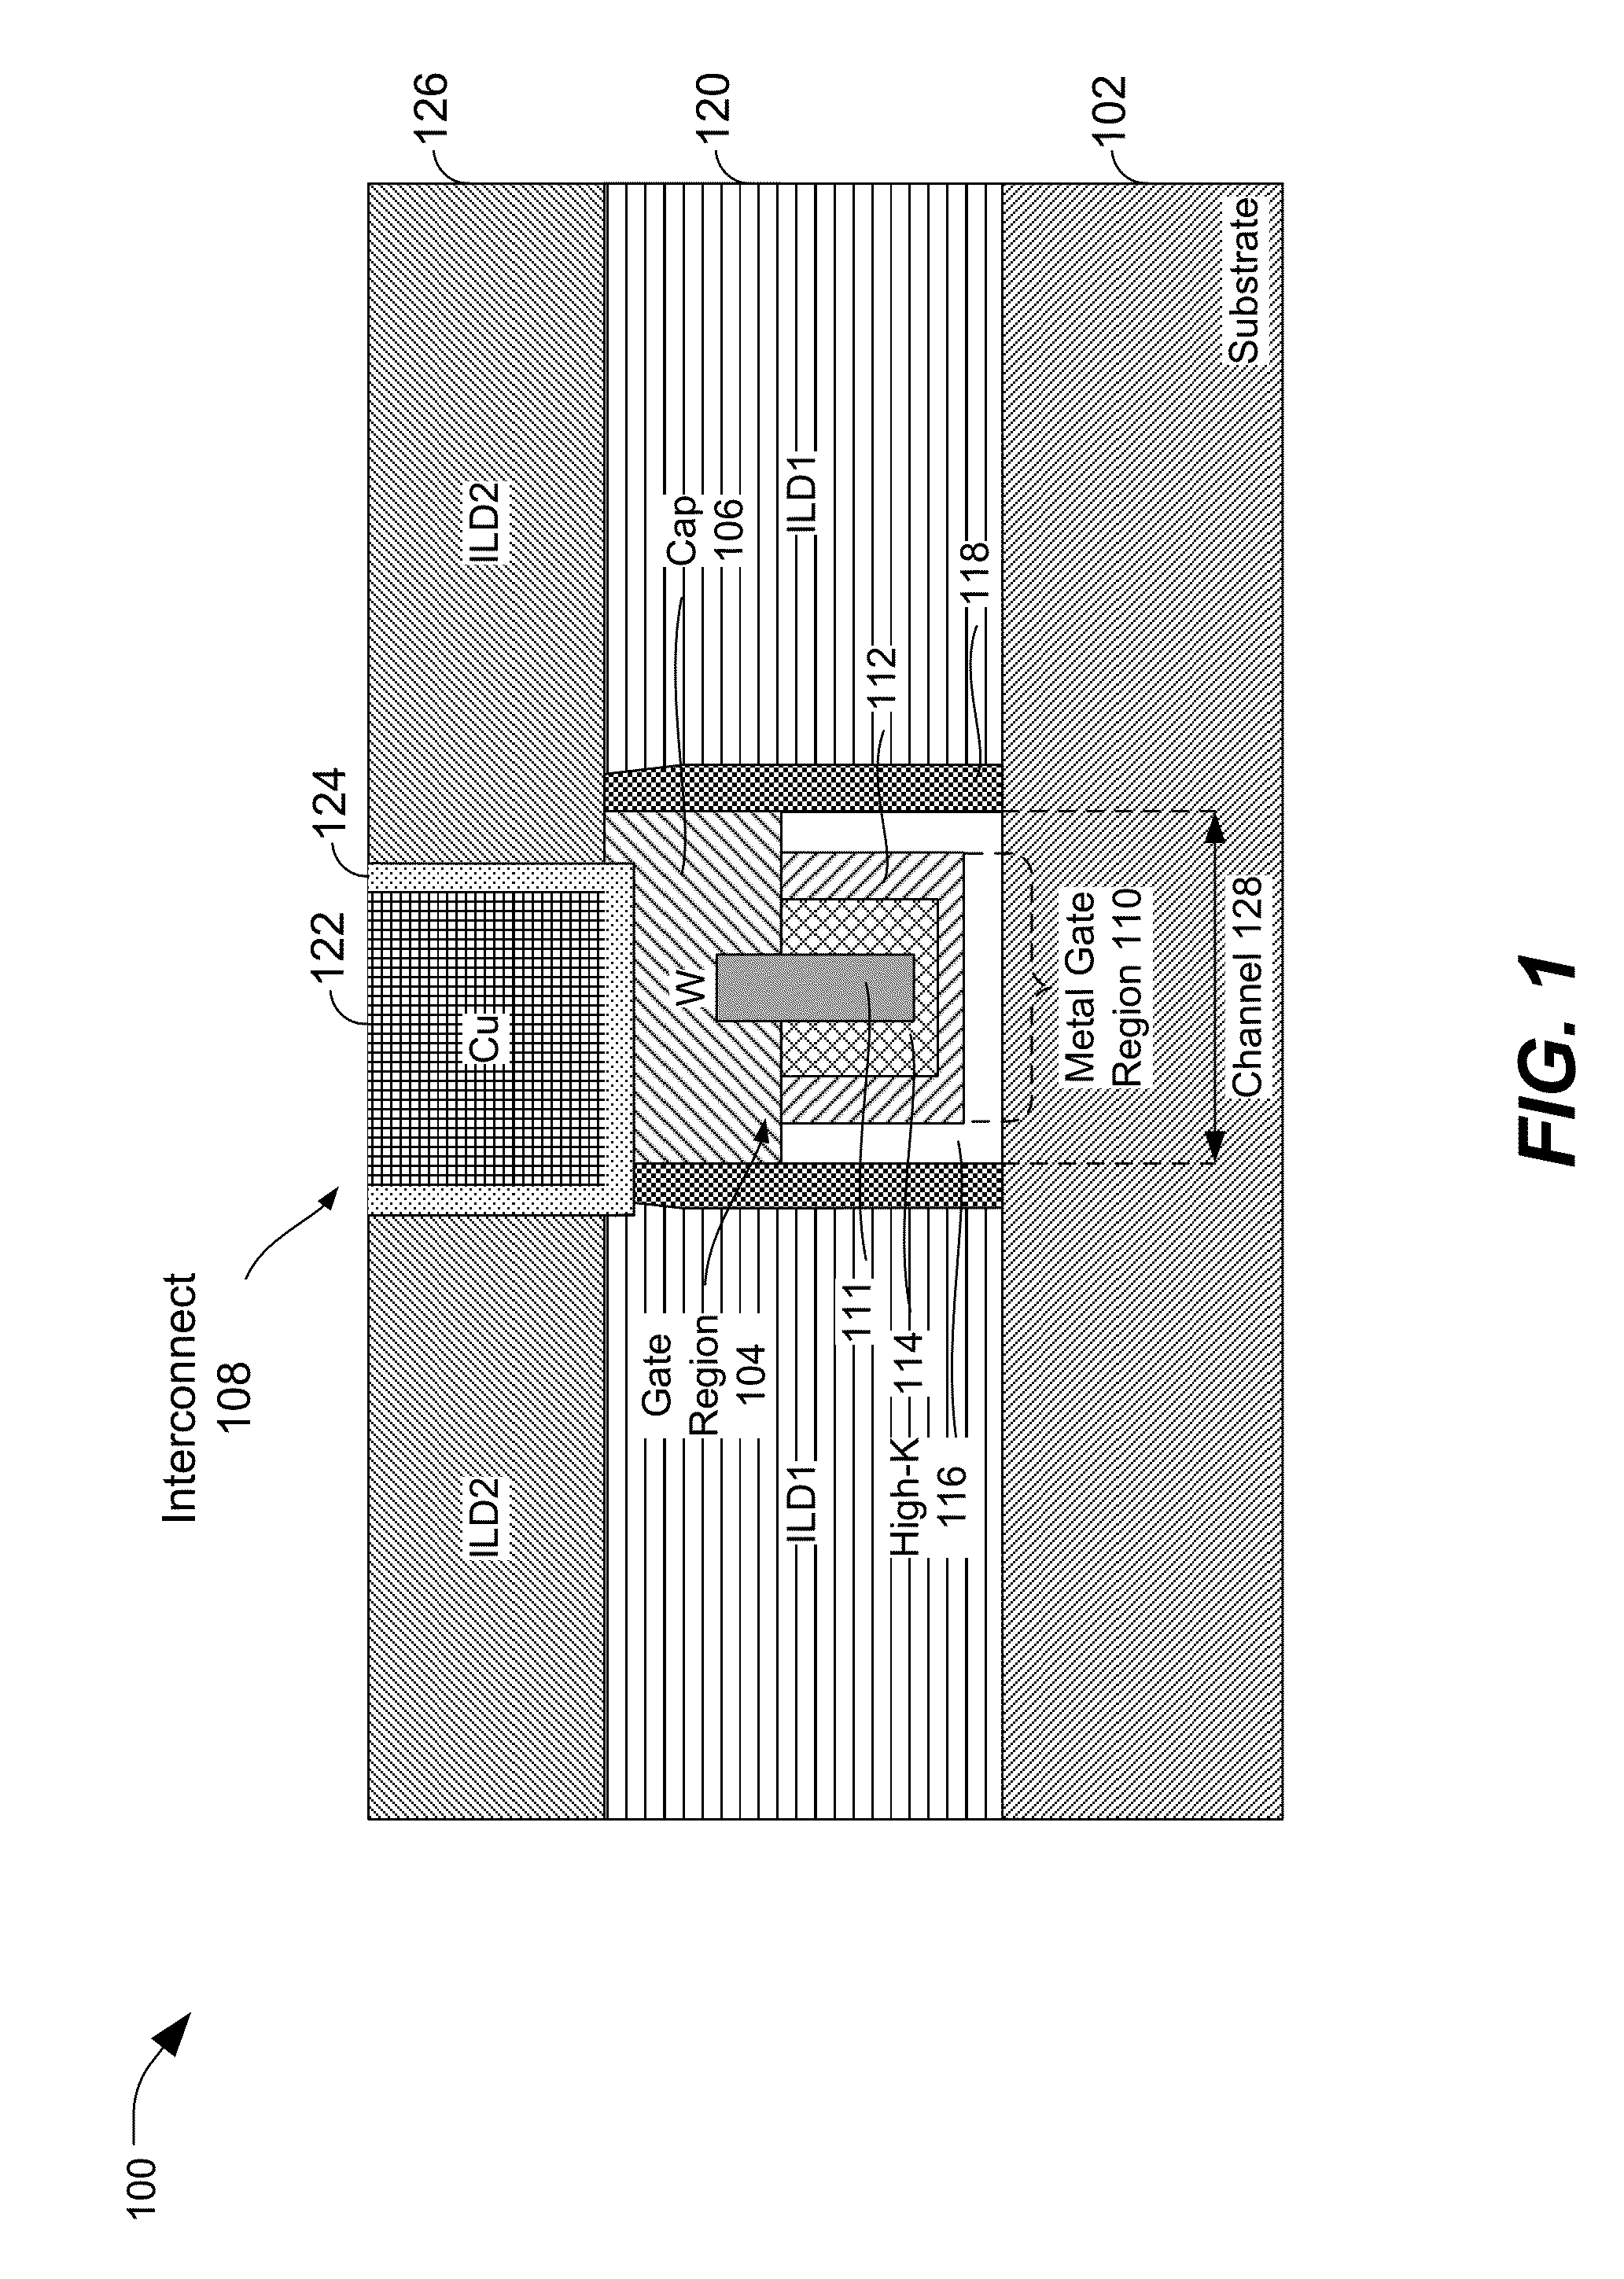 Conductive cap for metal-gate transistor